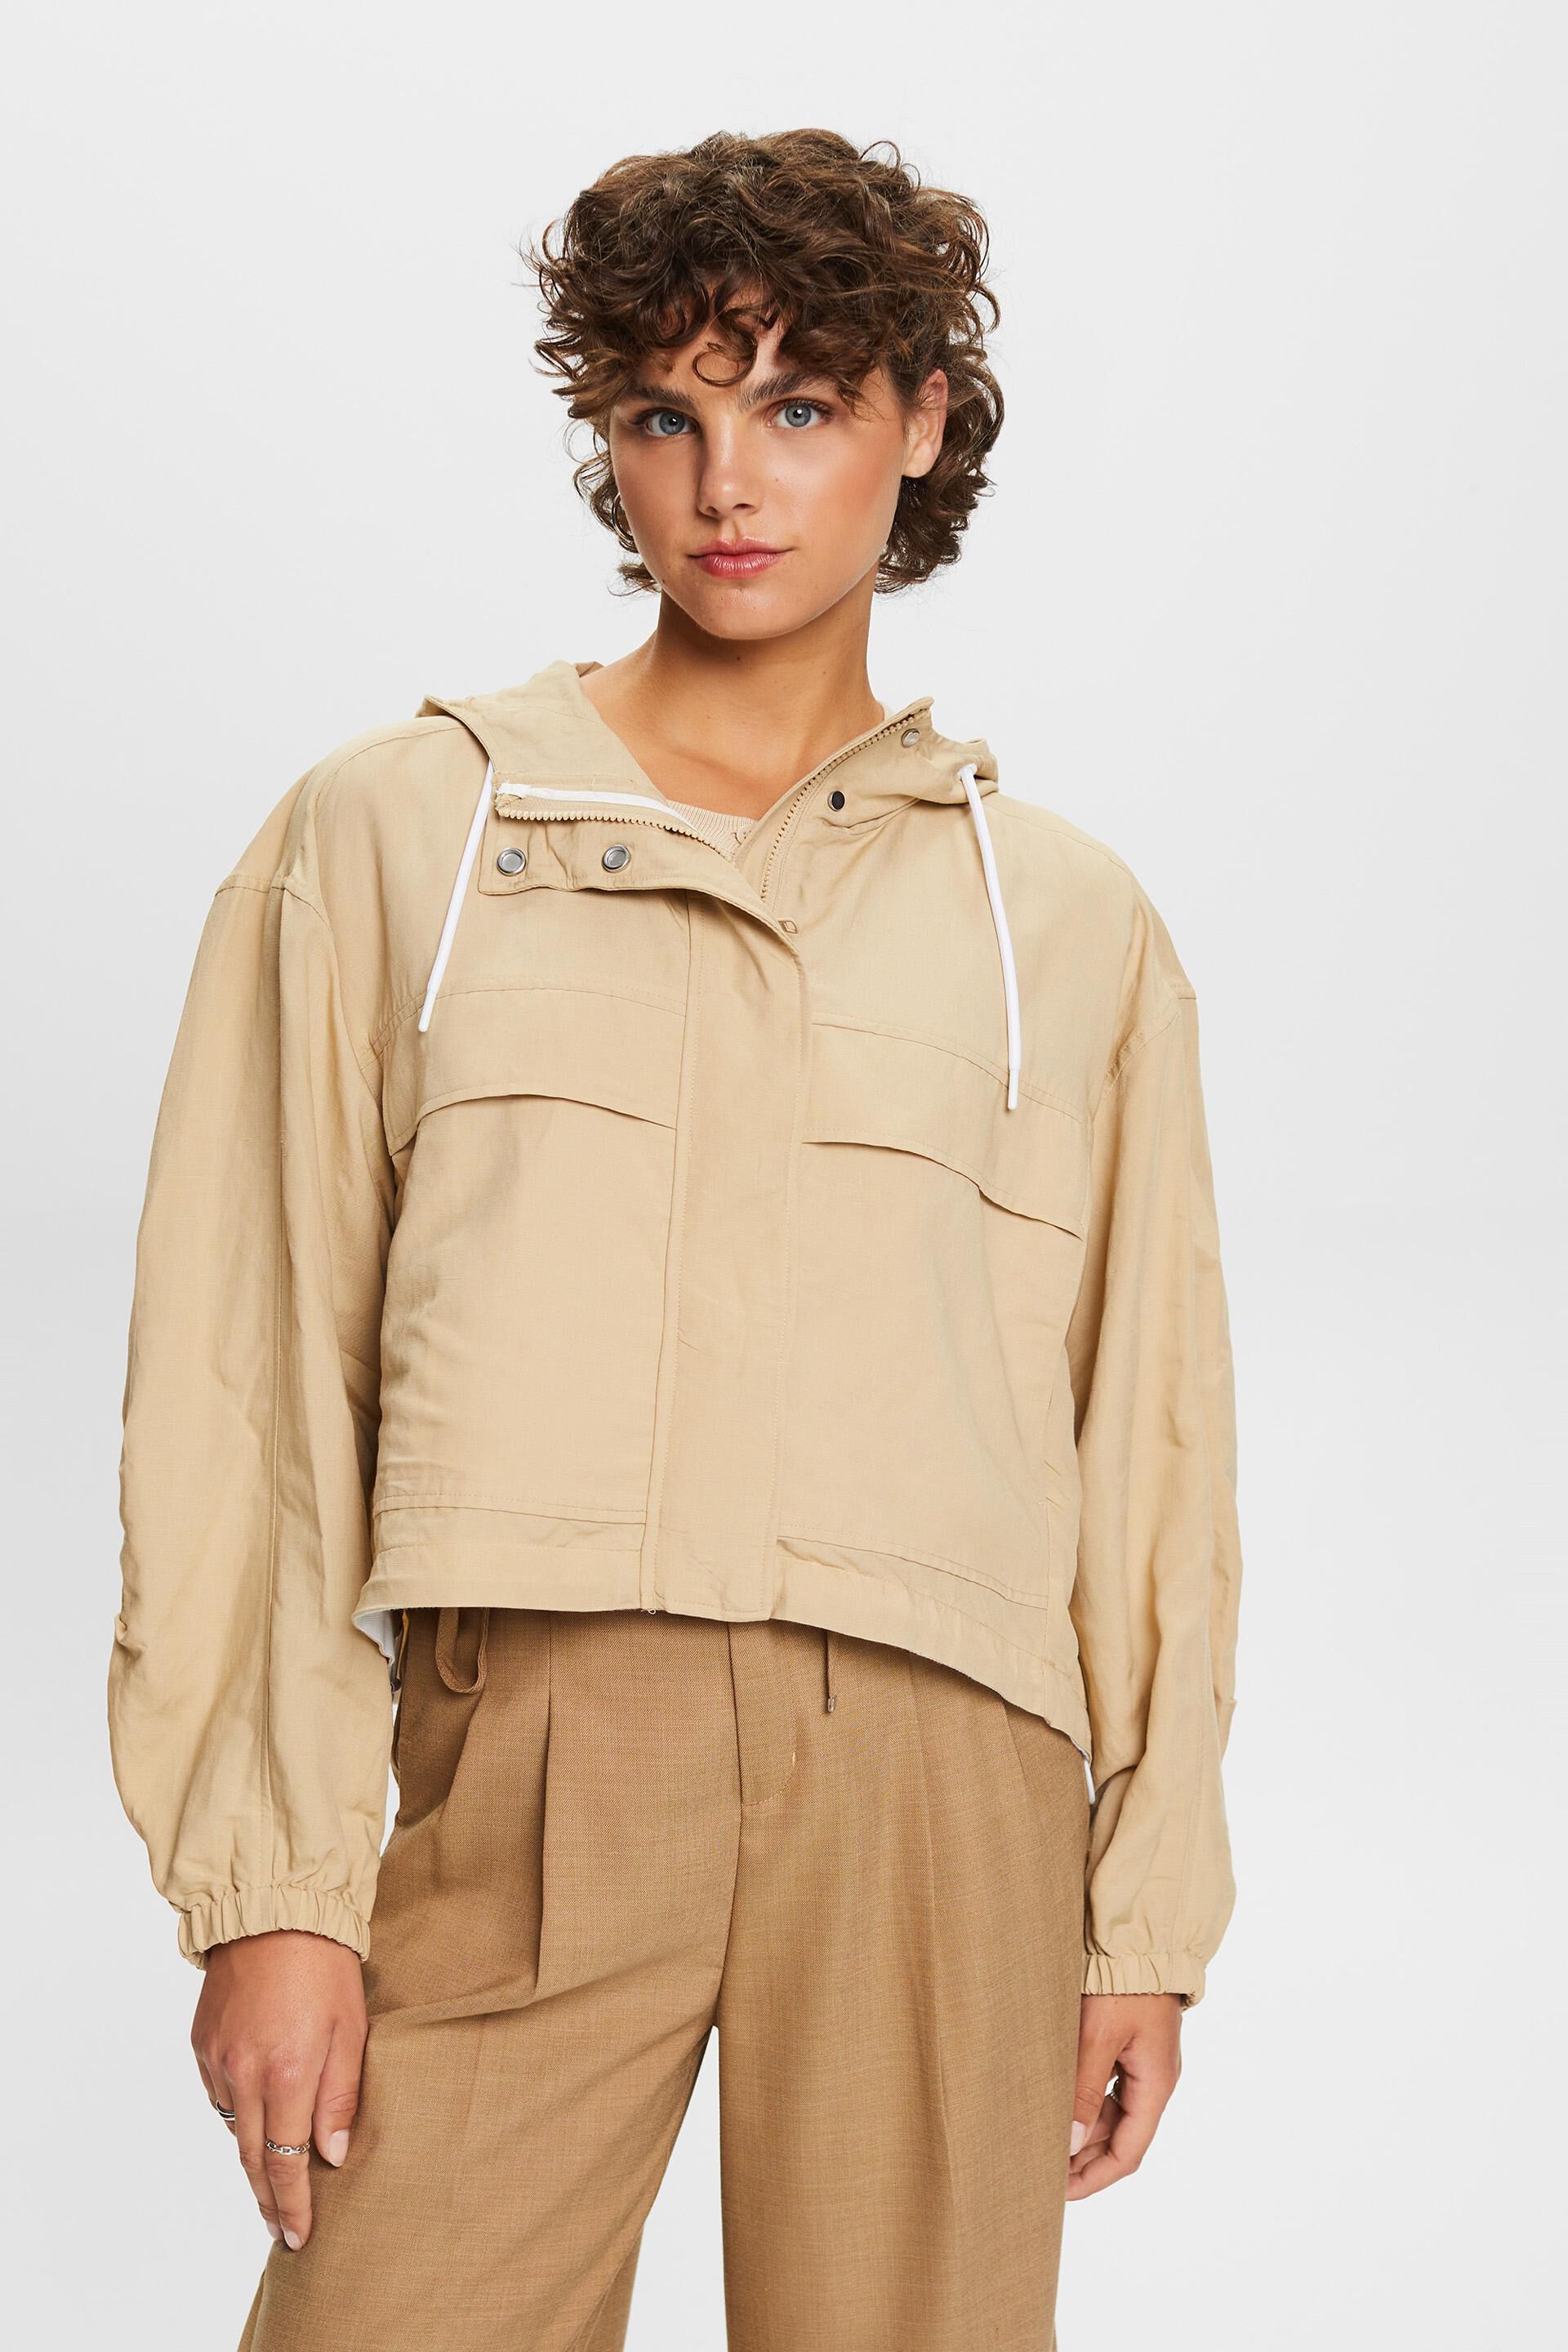 Esprit hood, blend linen a jacket Transitional with